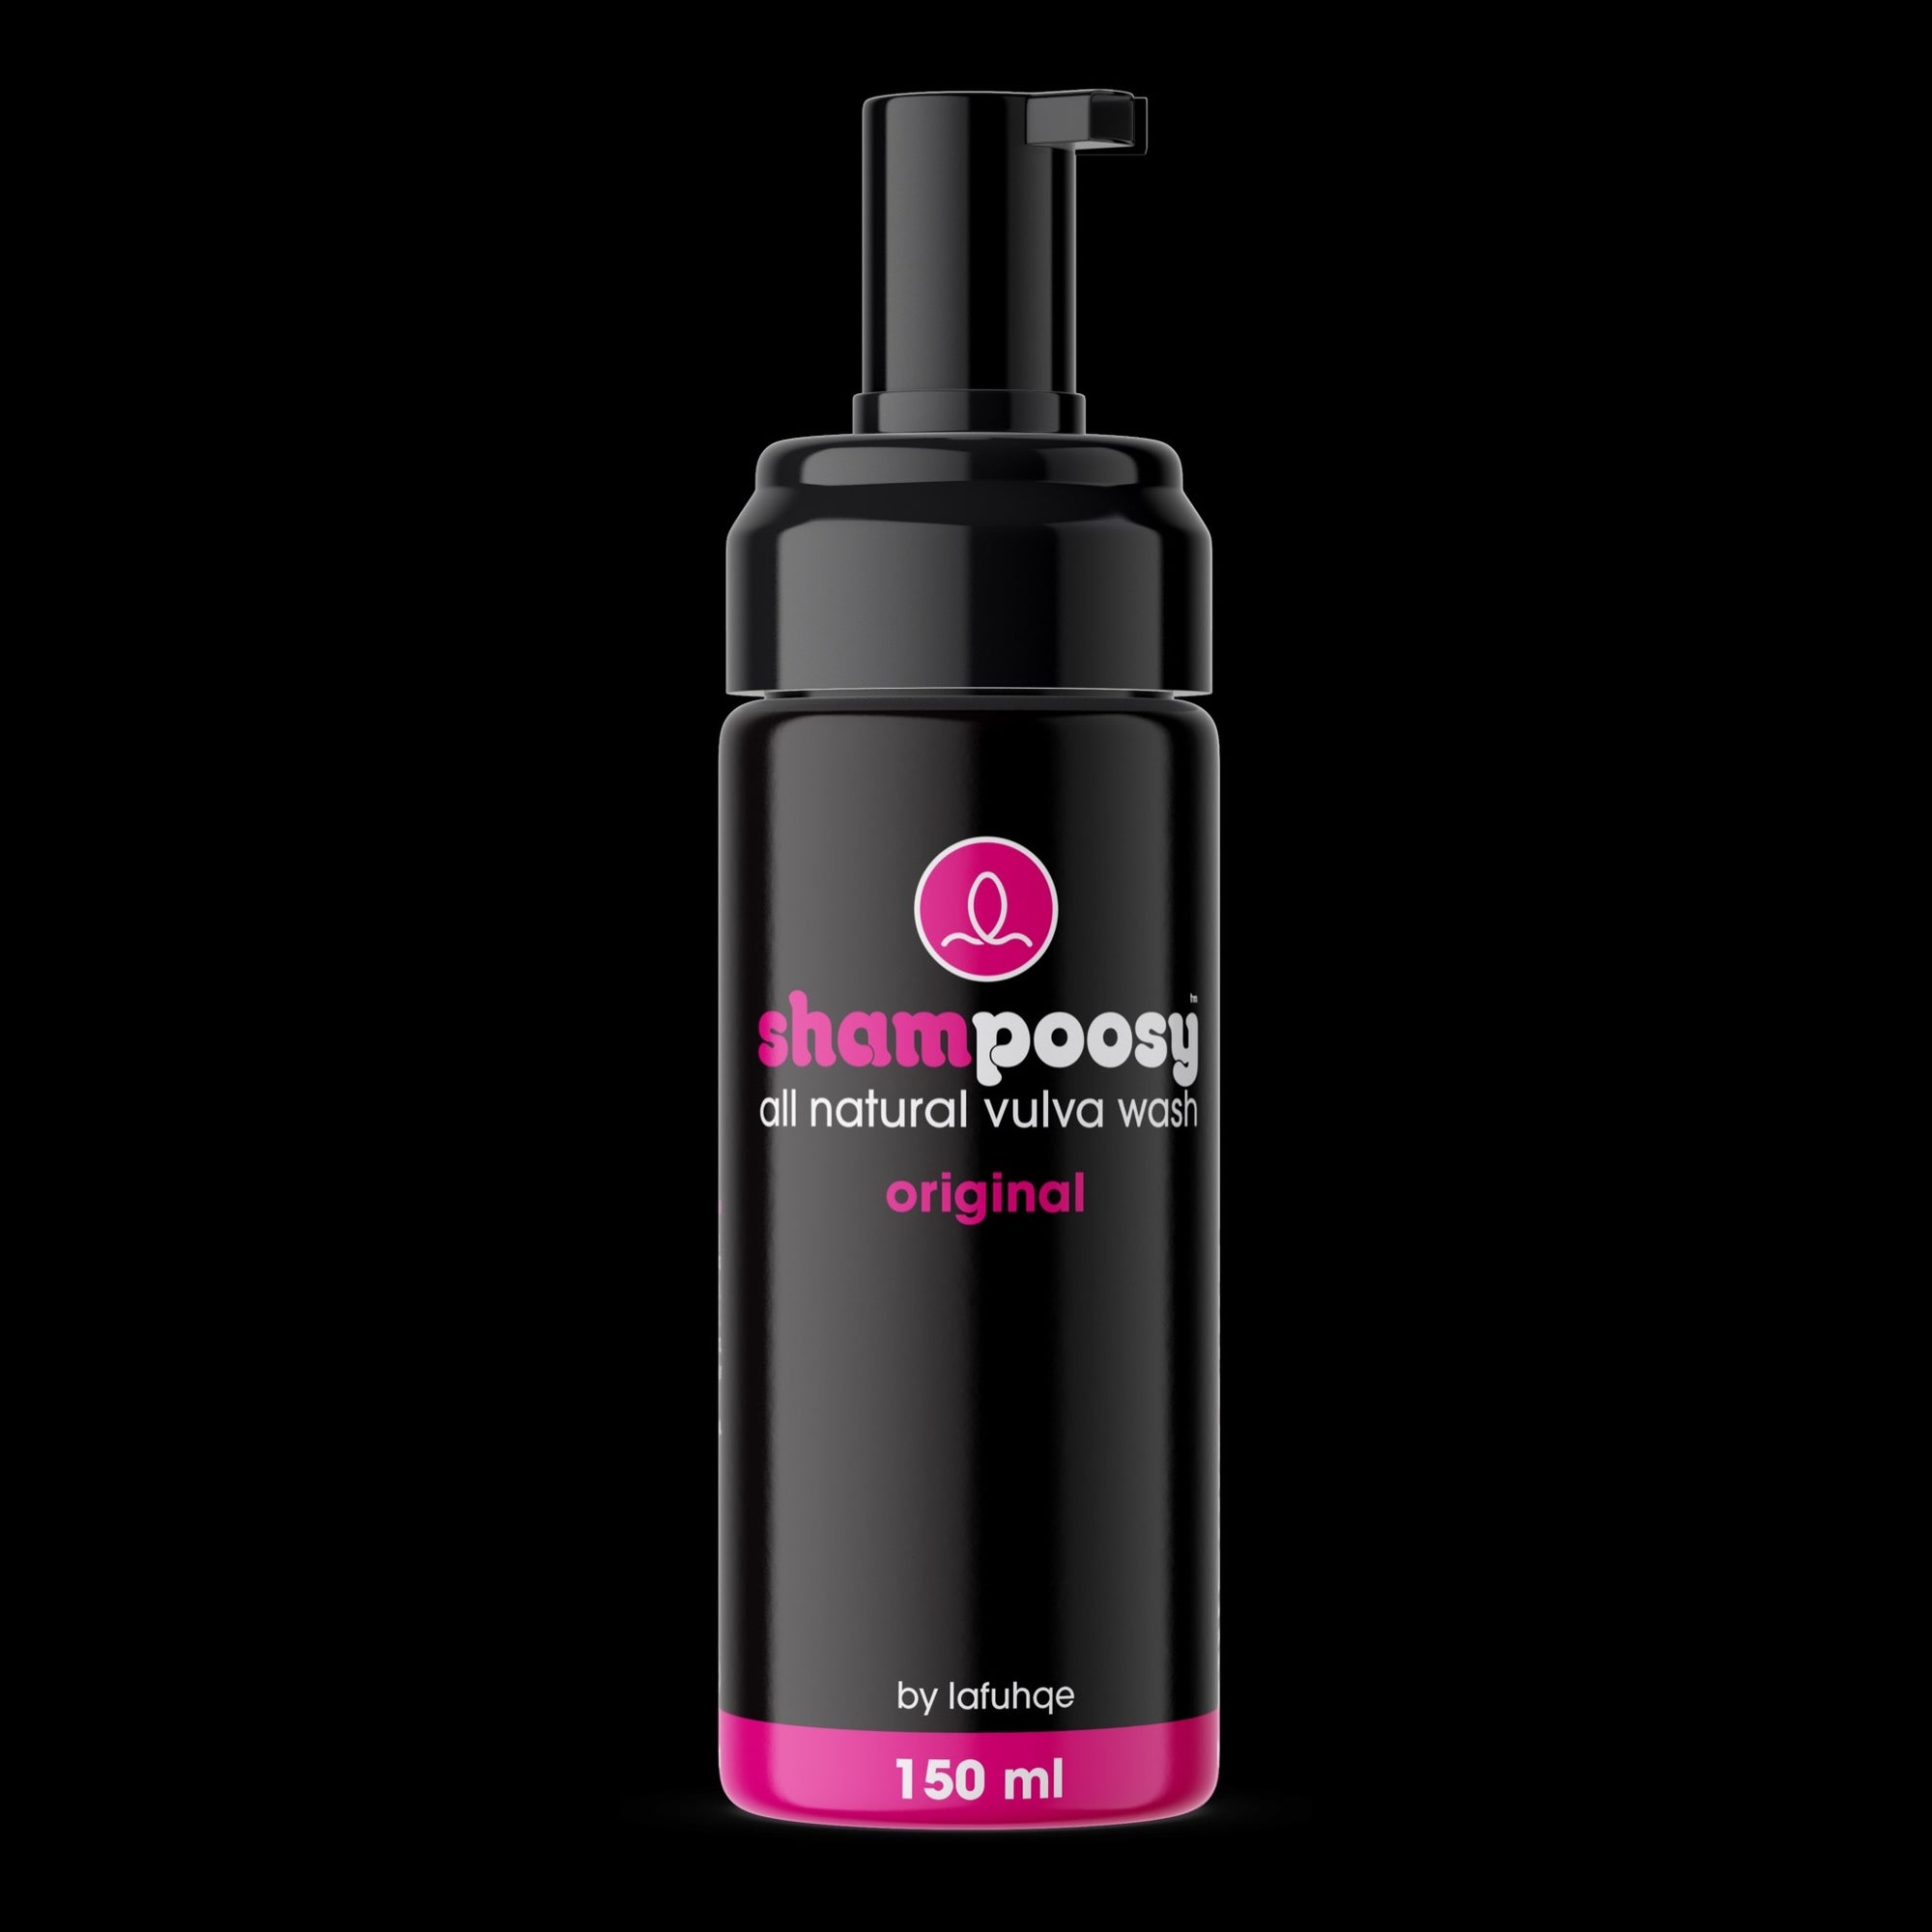 shampoosy ®